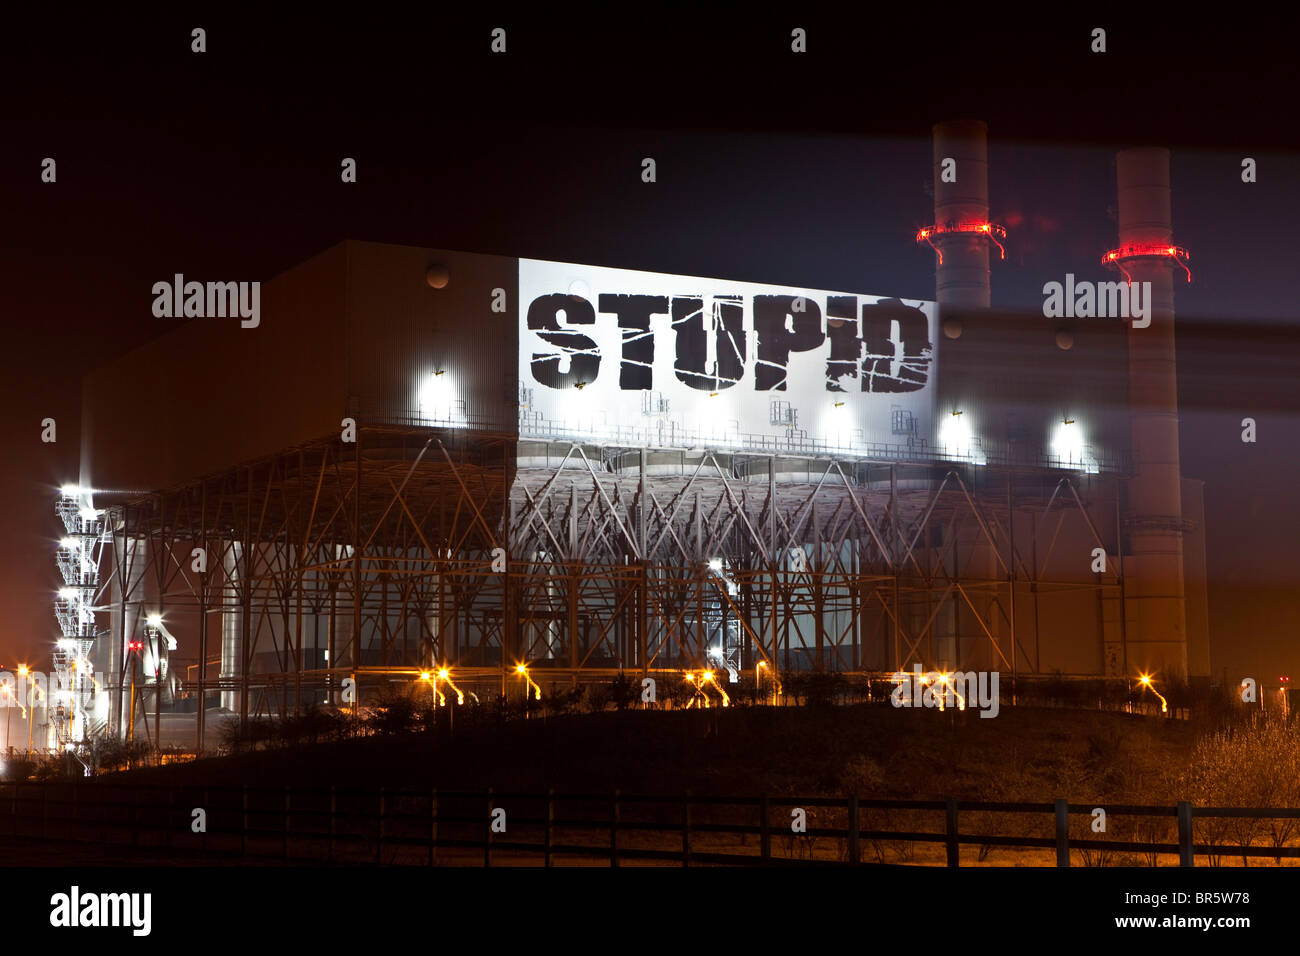 Le mot "stupide" est projeté sur le côté de Kingsnorth power station au cours d'une manifestation, Kent, UK. Banque D'Images